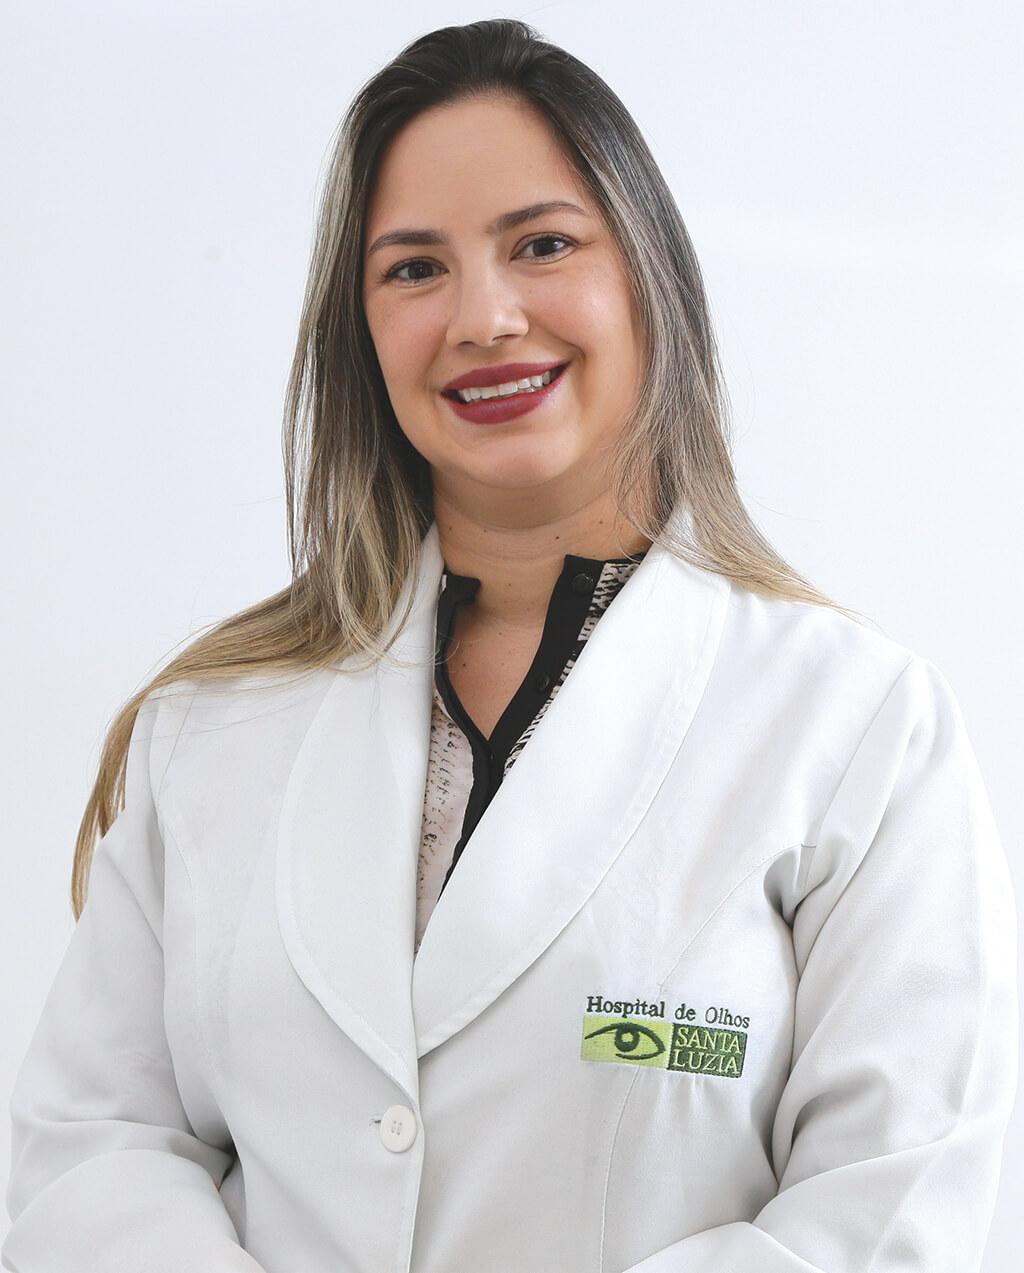 Carolina Siqueira